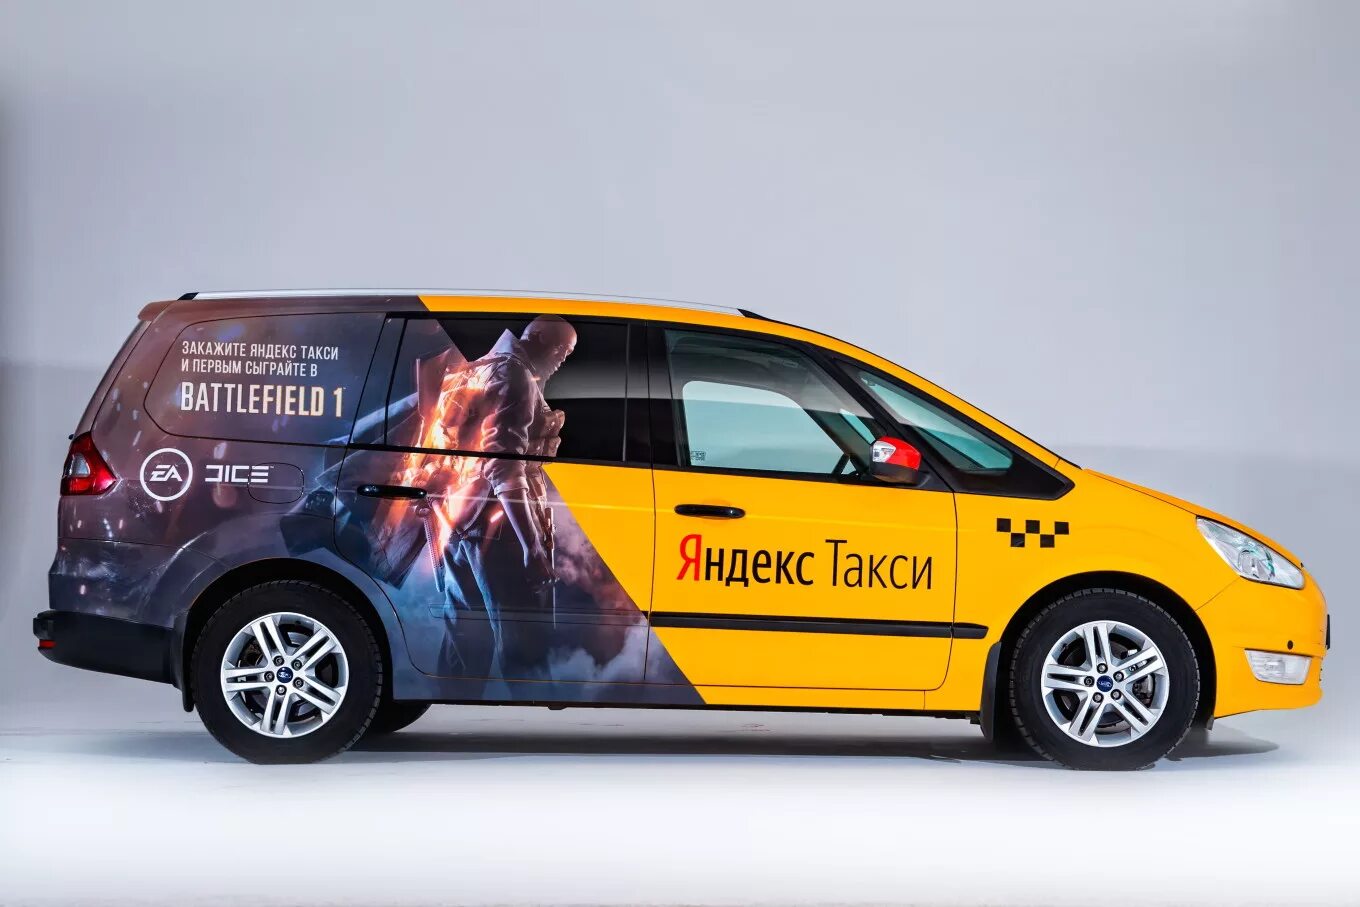 Маркет машин. Брендирование машин такси. Яндекс такси реклама. Реклама Яндекс на автомобиле. Яндекс брендирование автомобилей.